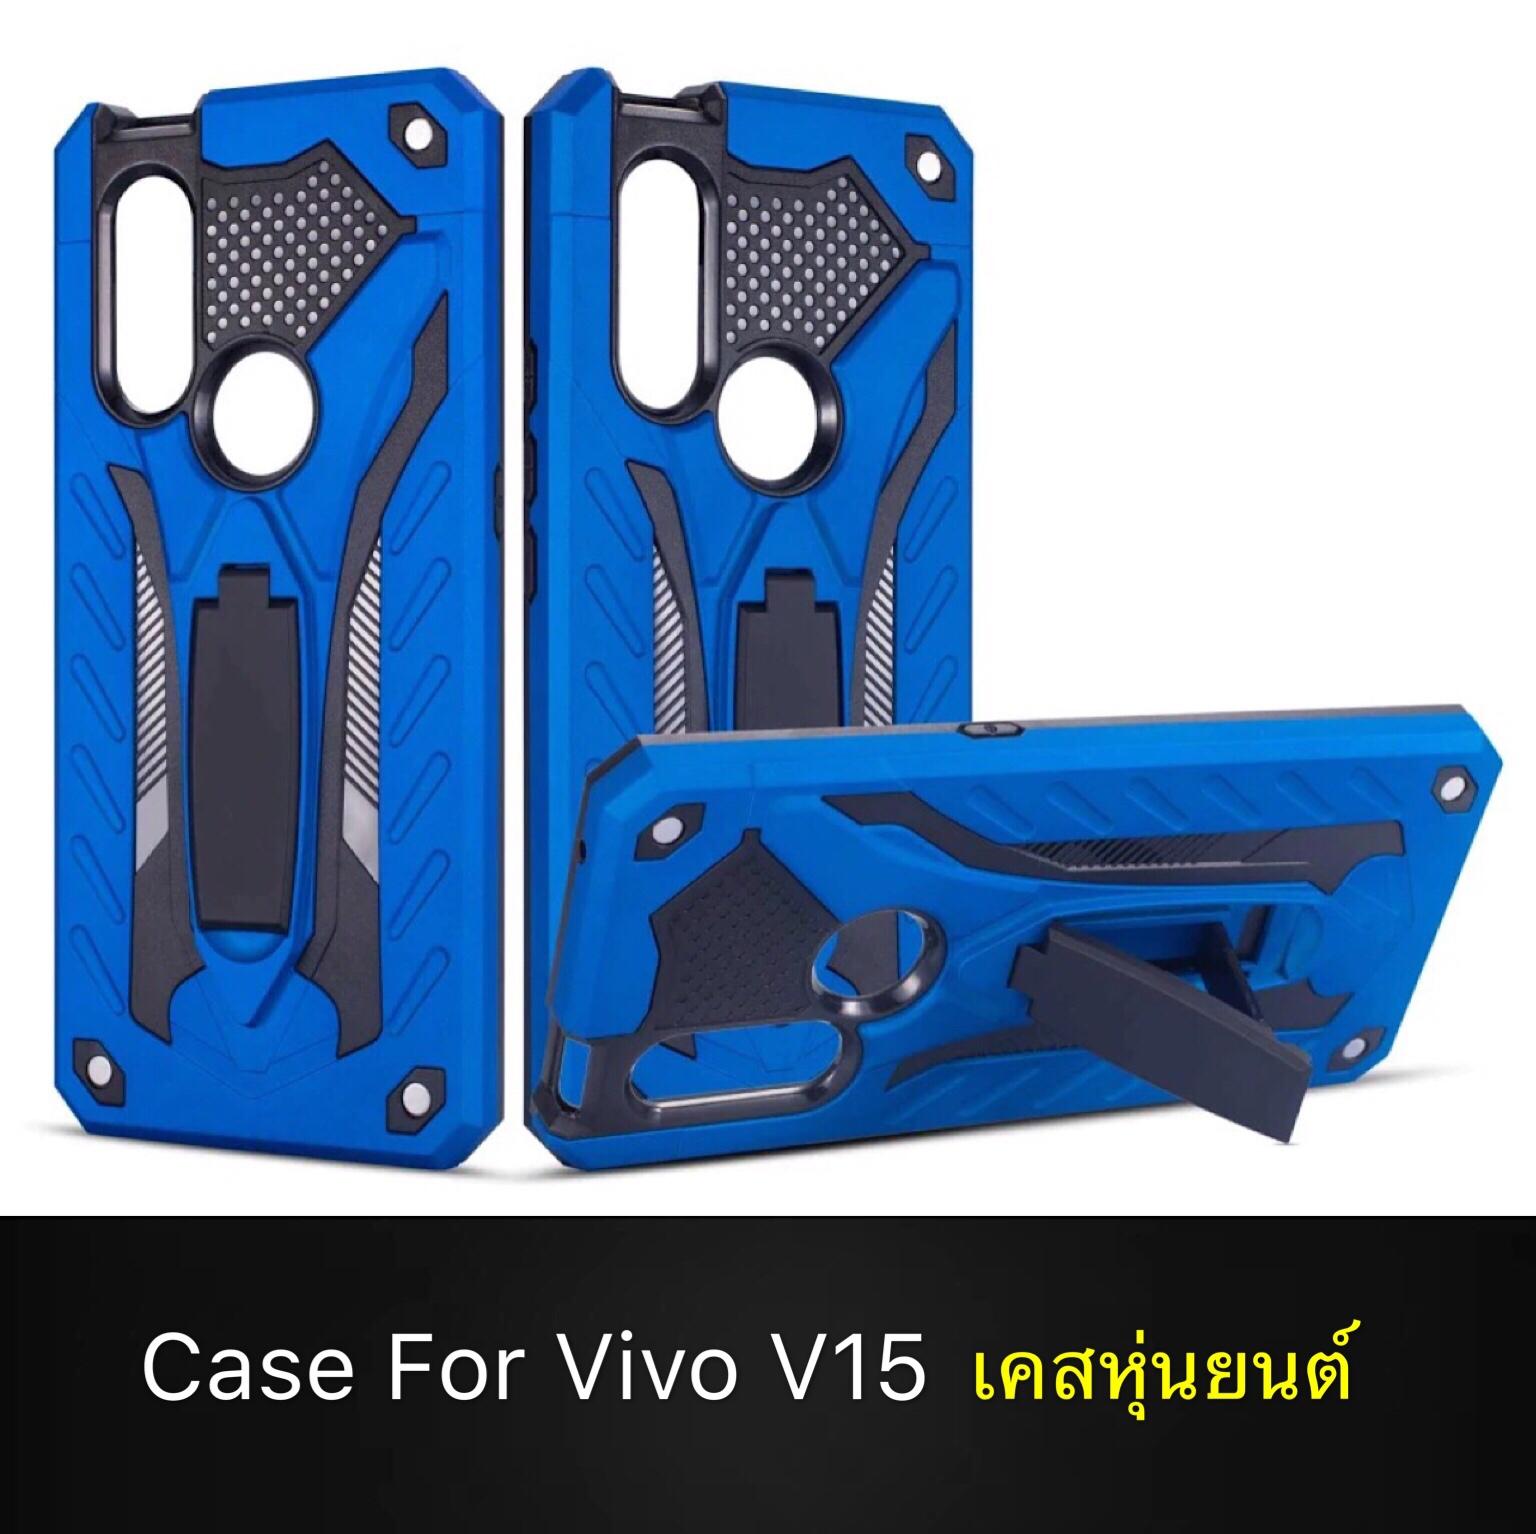 [รับประกันสินค้า] Case Vivo V15 เคสวีโว่ V15 Robot case เคสหุ่นยนต์ เคส vivo v15 เคสไฮบริด มีขาตั้ง เคสกันกระแทก TPU CASE สินค้าใหม่